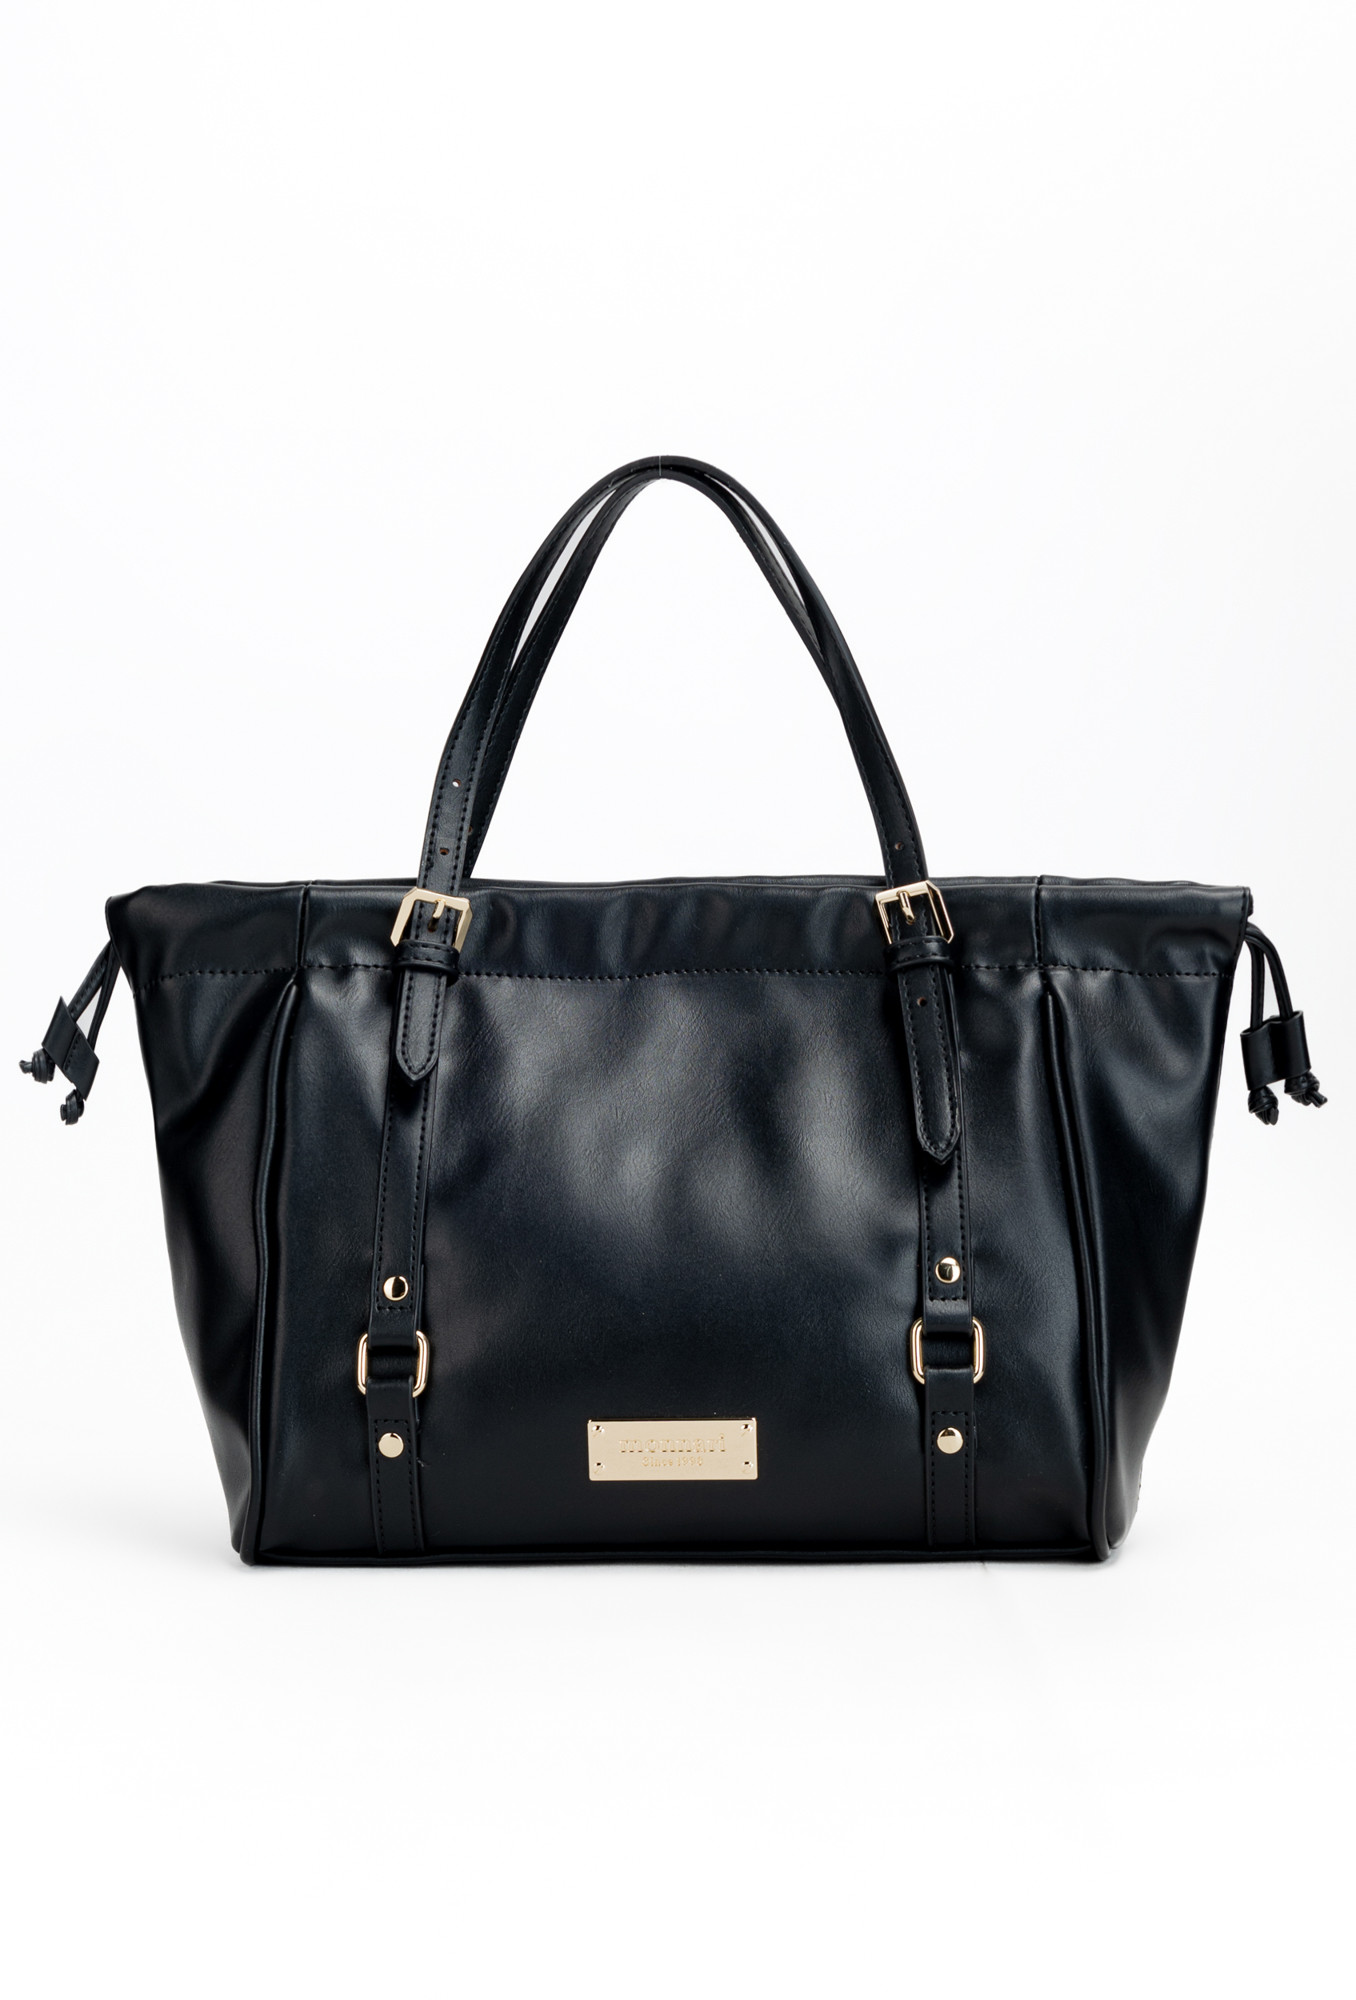 Monnari Bags Dámská kabelka s ozdobnými popruhy černá OS